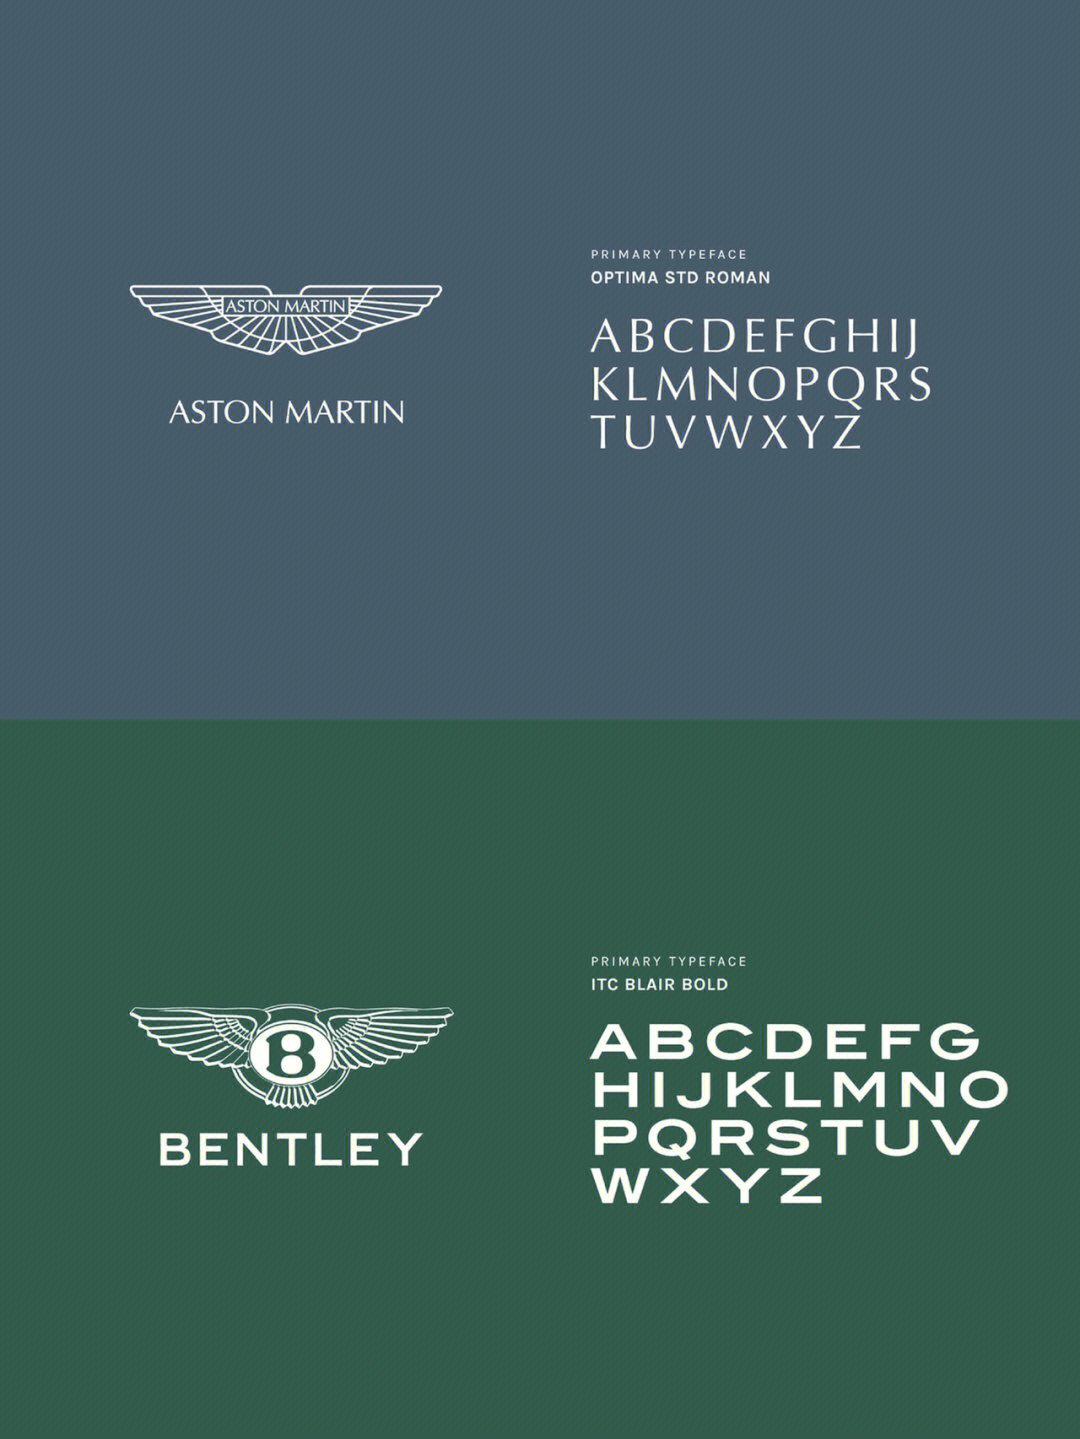 劳斯莱斯公司优化了品牌logo，还推出了品牌字体